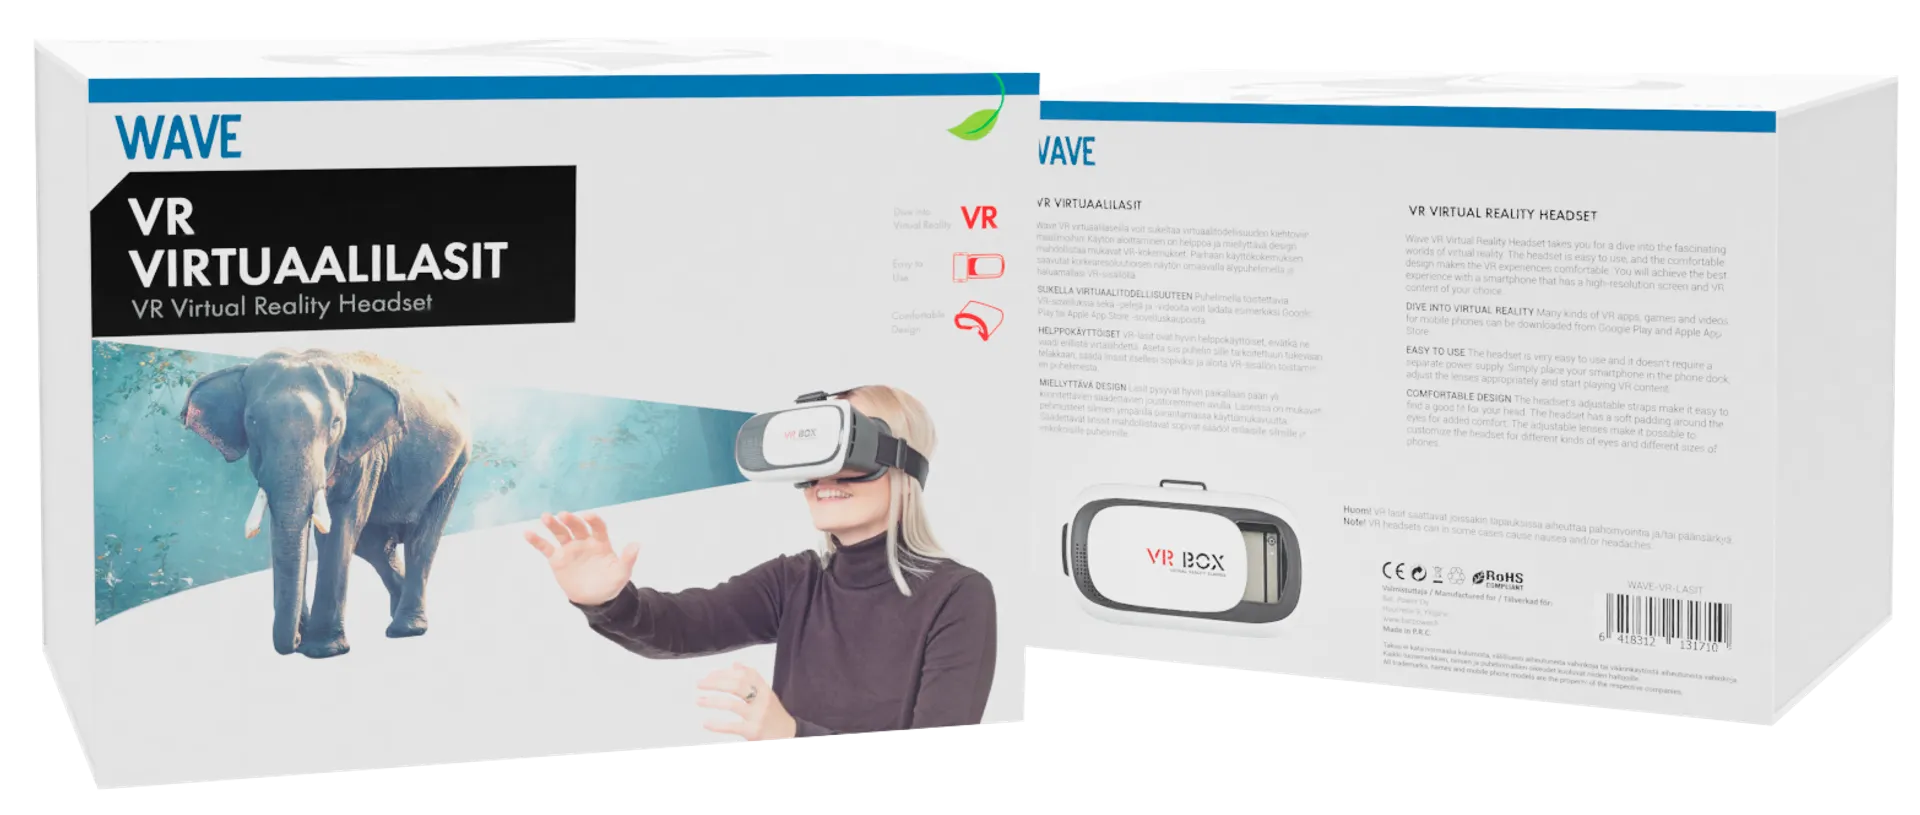 Wave VR Virtuaalilasit - 5